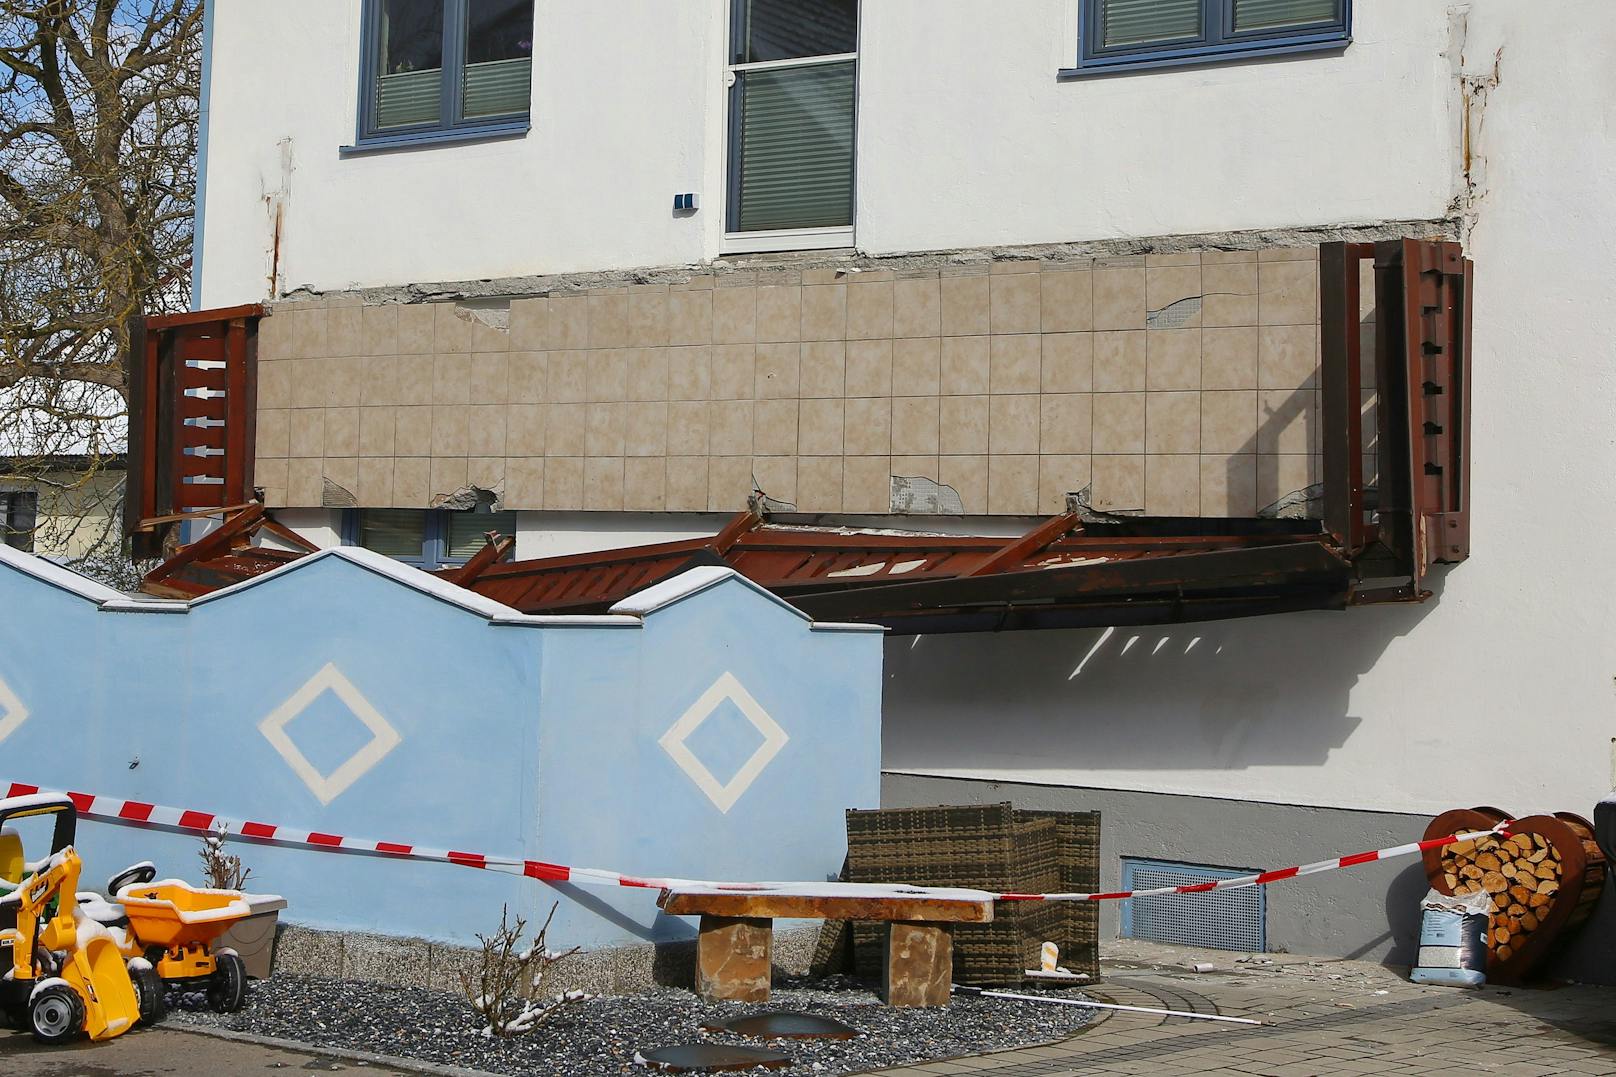 In Lenzing stürzte der Balkon eines Einfamilienhauses in die Tiefe. Eine Frau (55) starb an ihren Verletzungen.